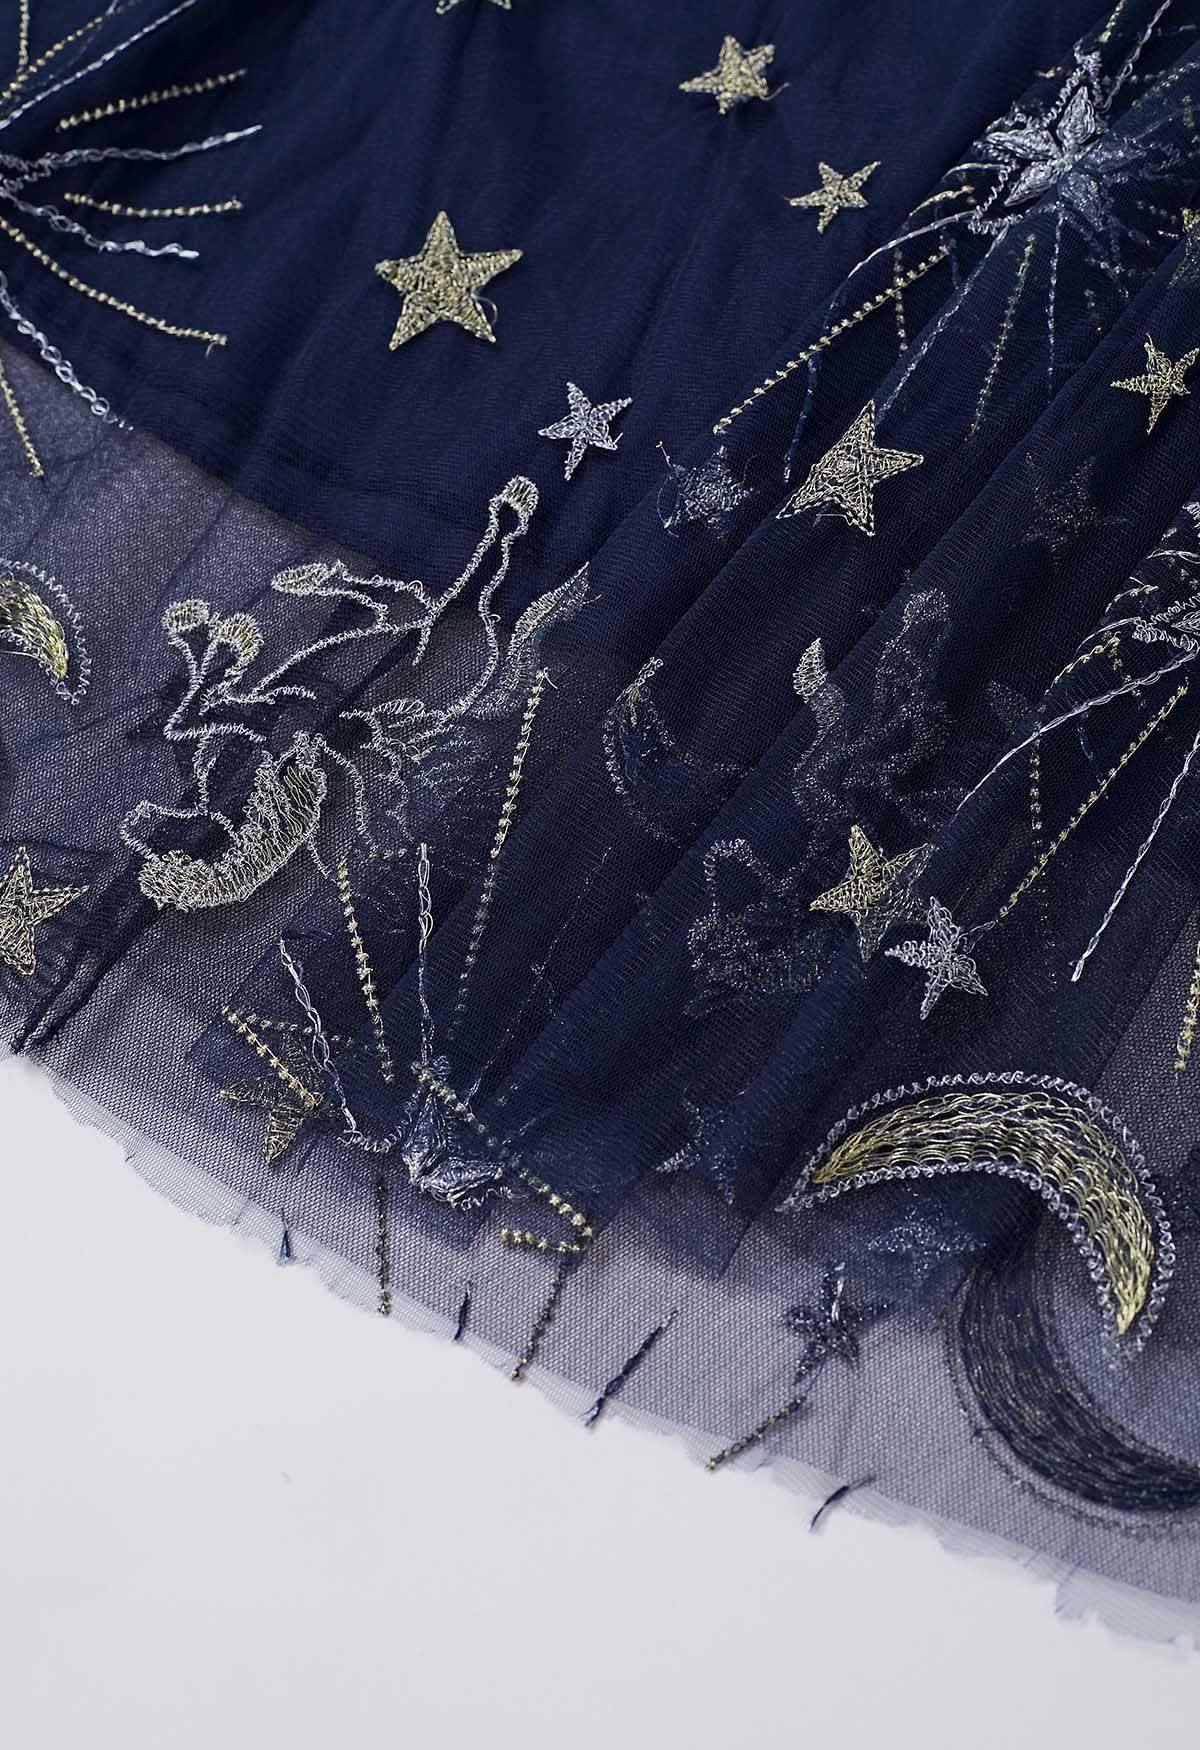 تنورة من قماش التول الشبكي المطرز بالقمر والنجمة الغامضة باللون الأزرق الداكن